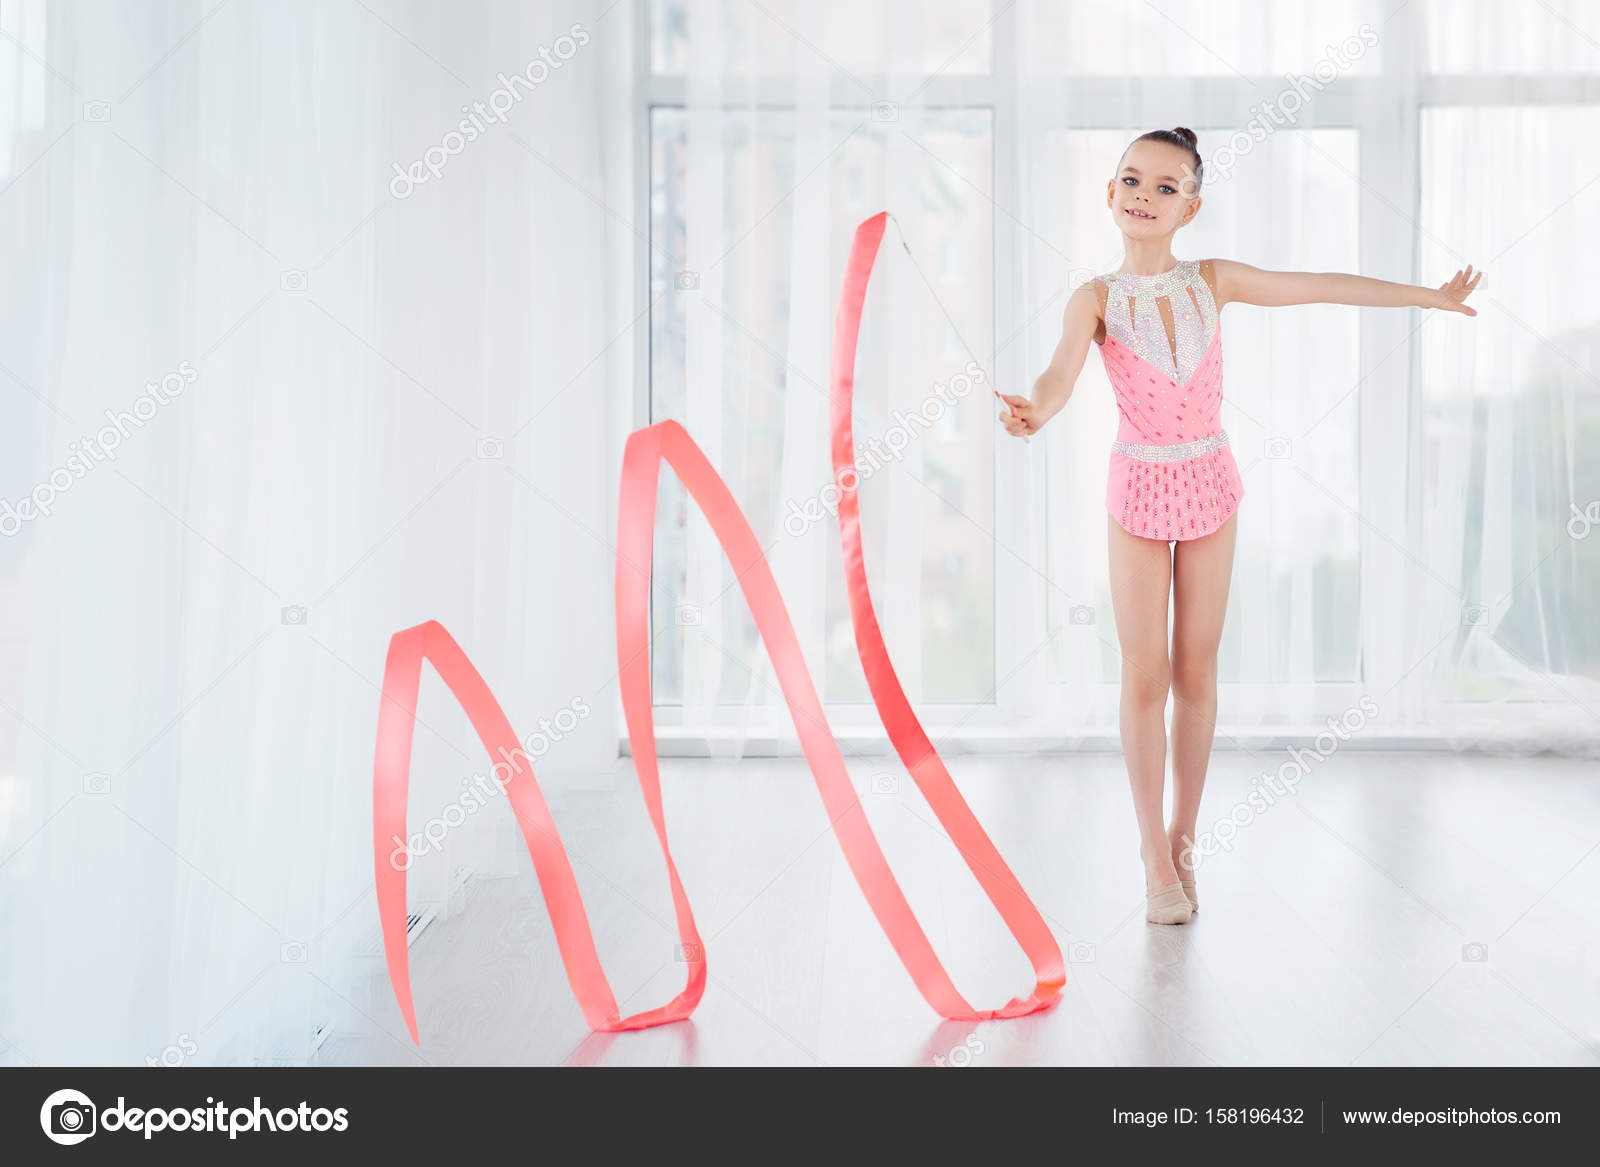 Hermosa niña gimnasta en vestido deportivo rosa, haciendo ejercicio de gimnasia  rítmica Espirales con cinta de arte: fotografía de stock © SvetaOrlova  #158196432